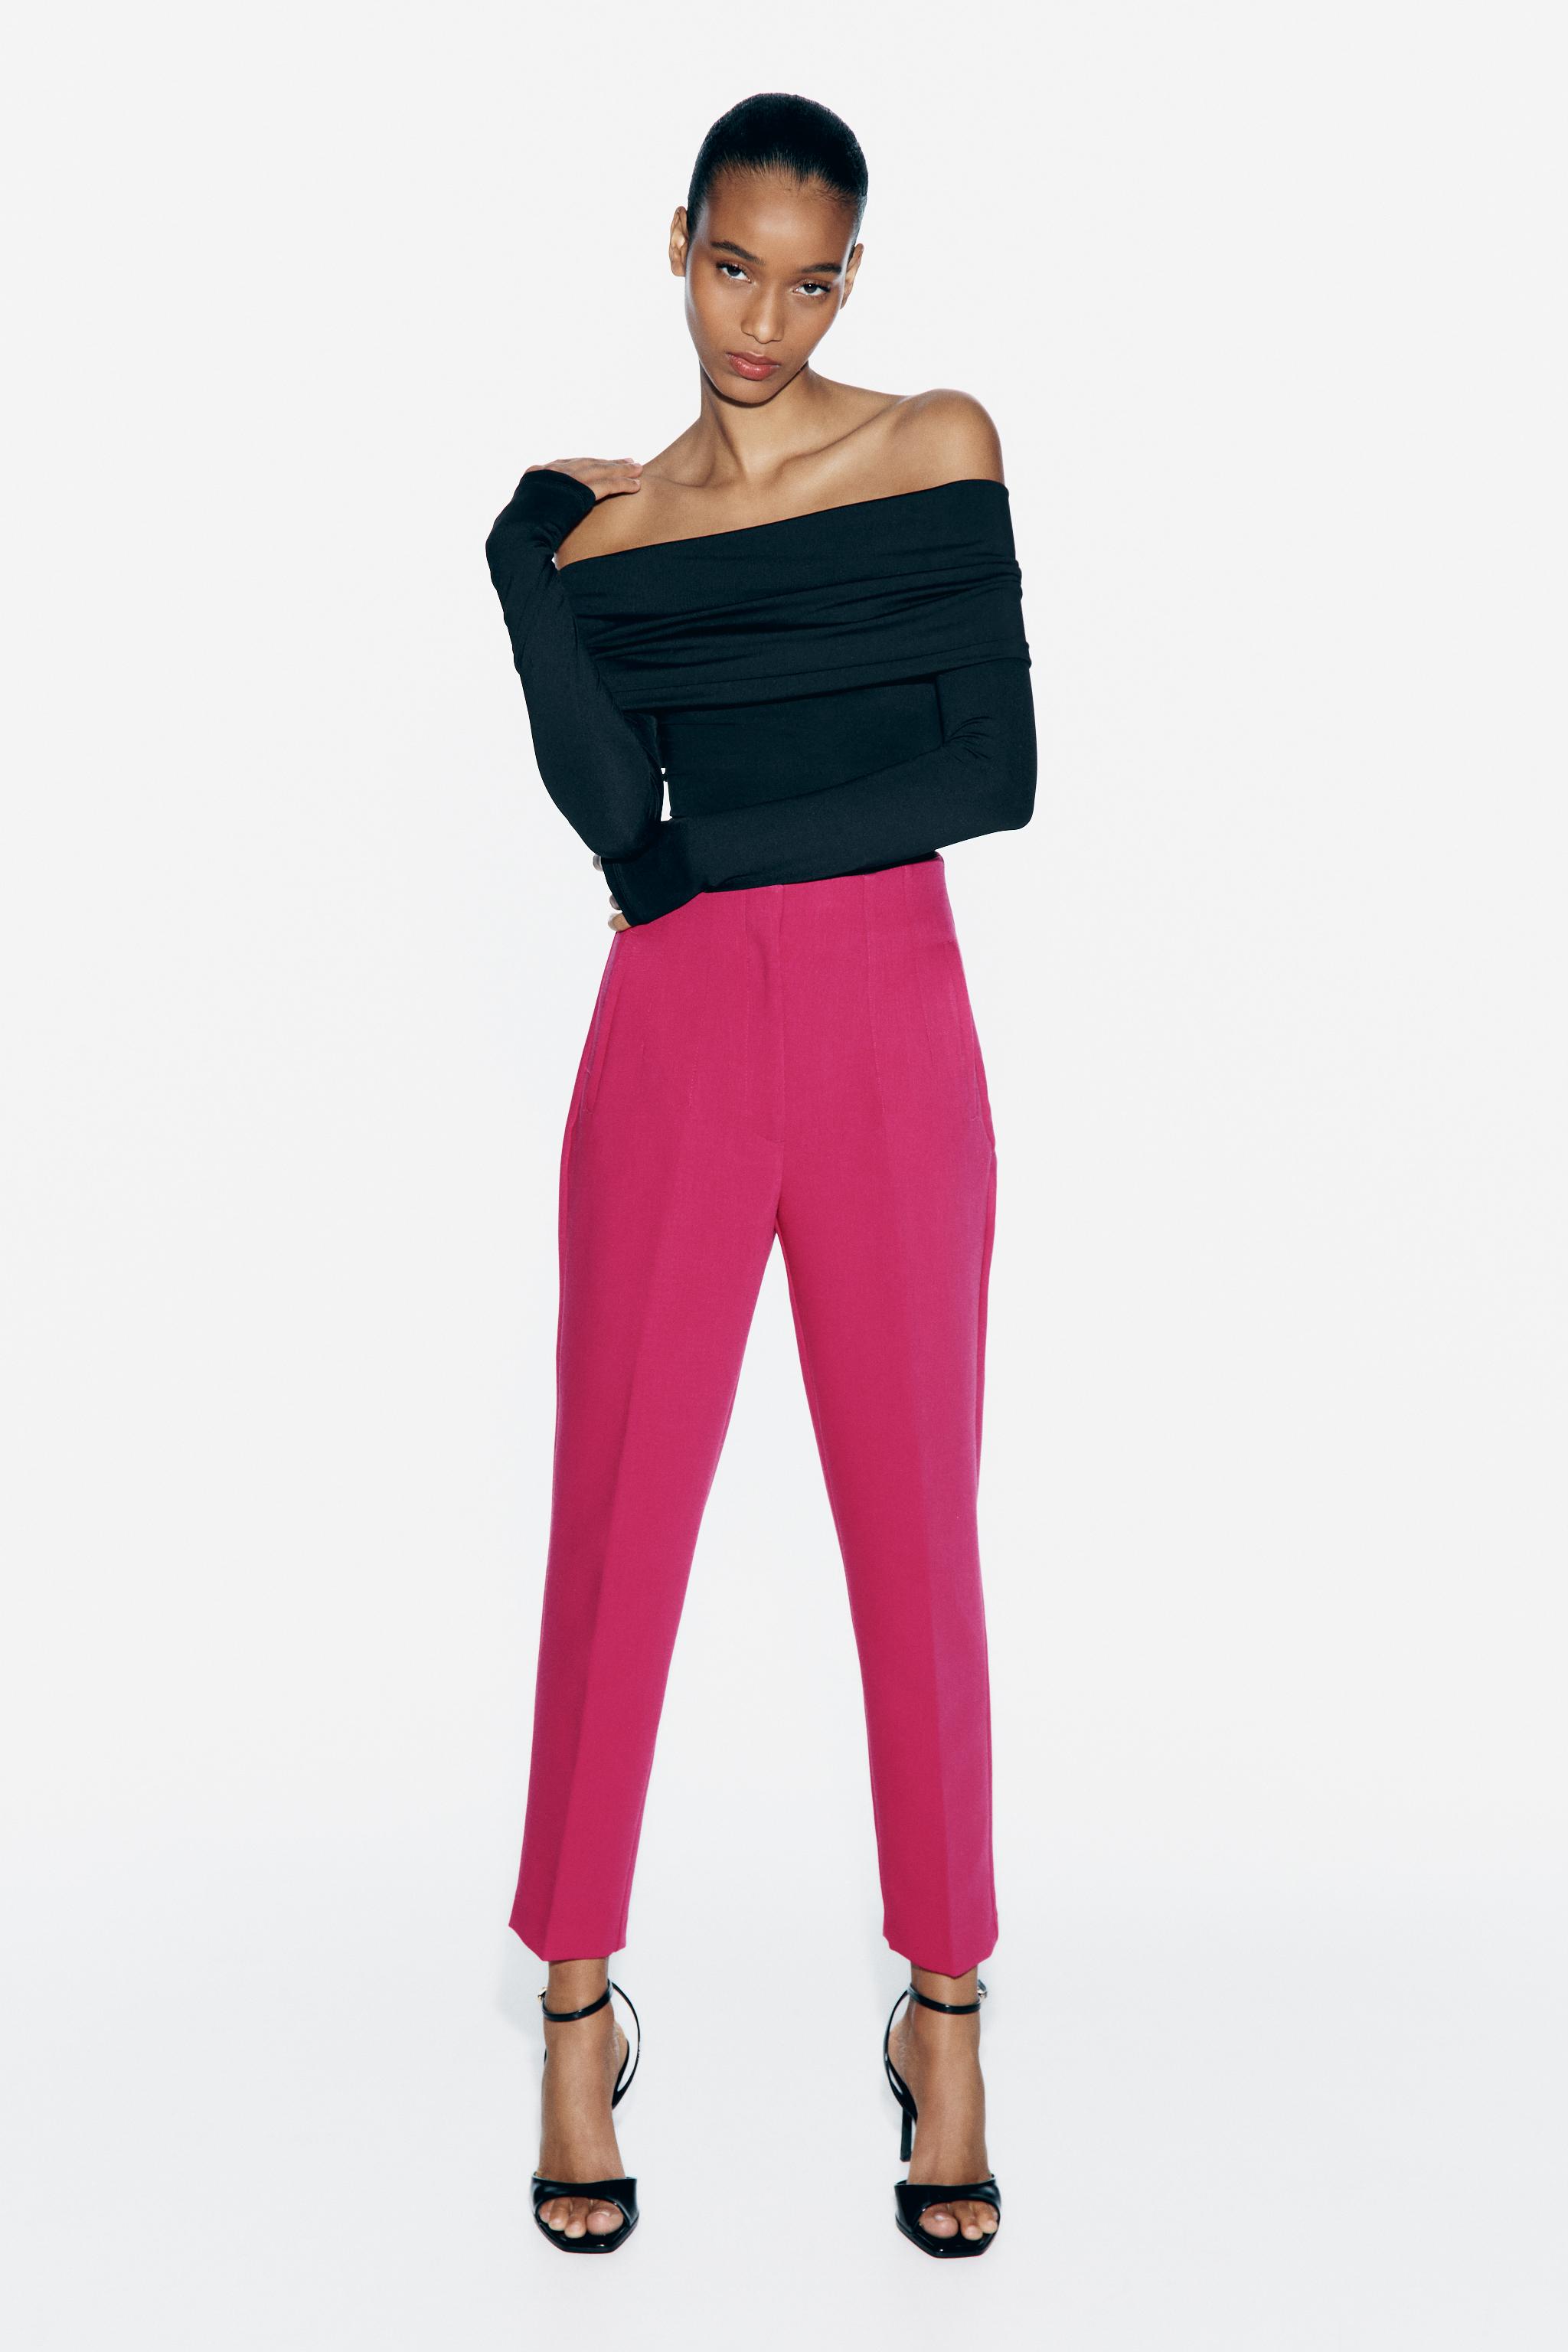 Zara Woman High Waist Black Pants Trousers, Women's Fashion